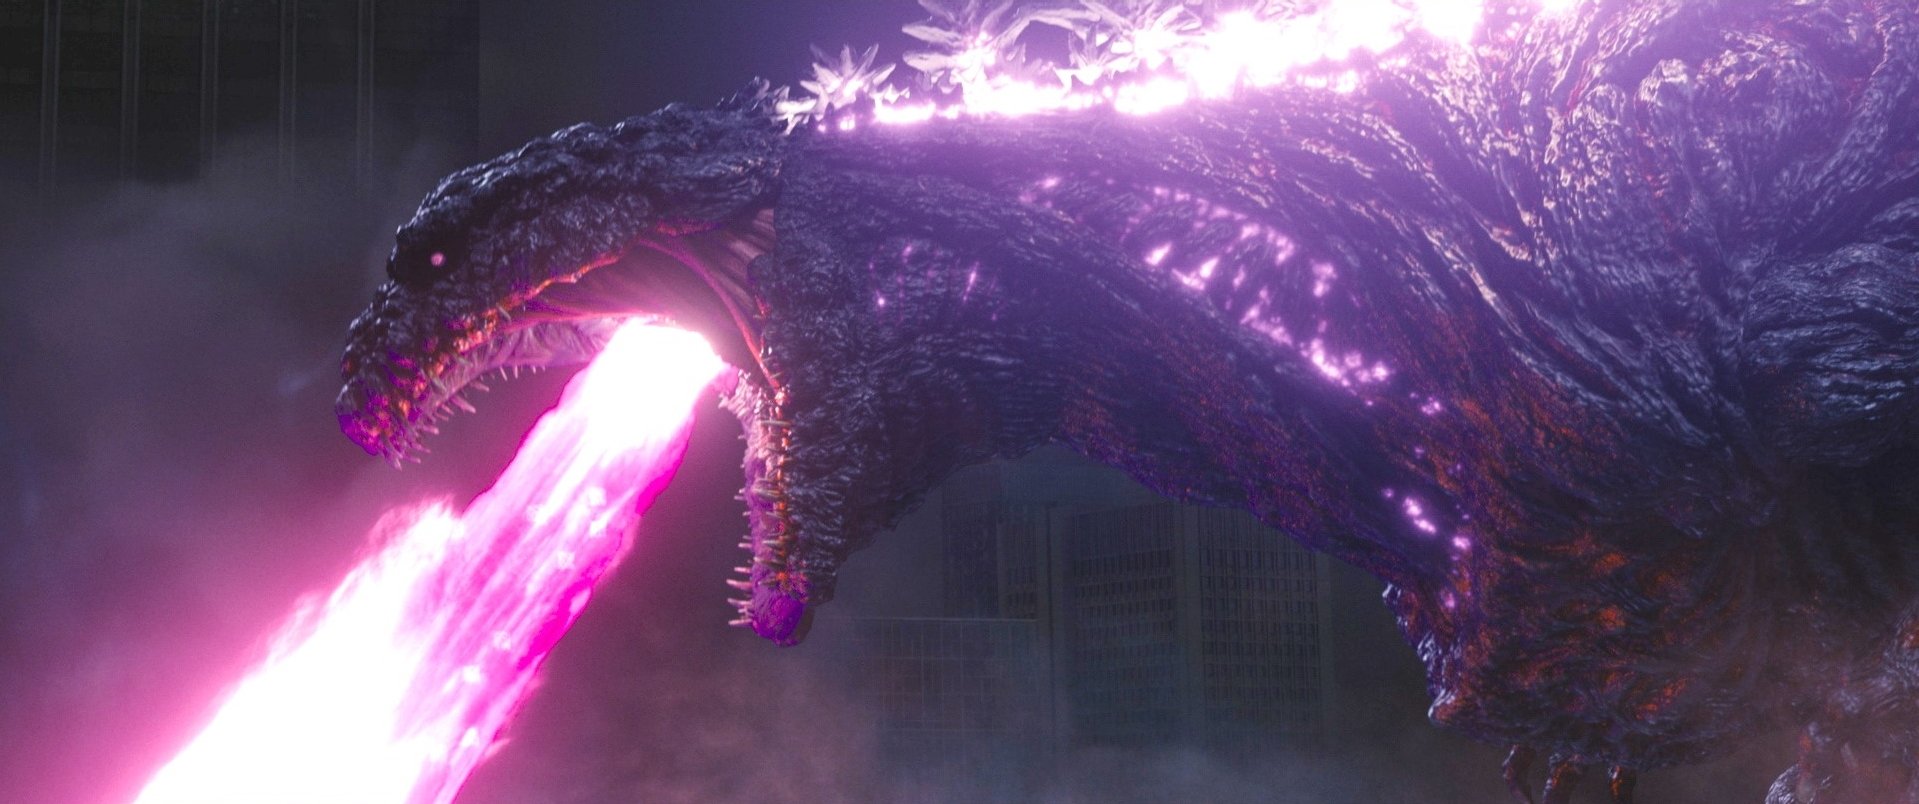 Shin-Godzilla_3.jpg